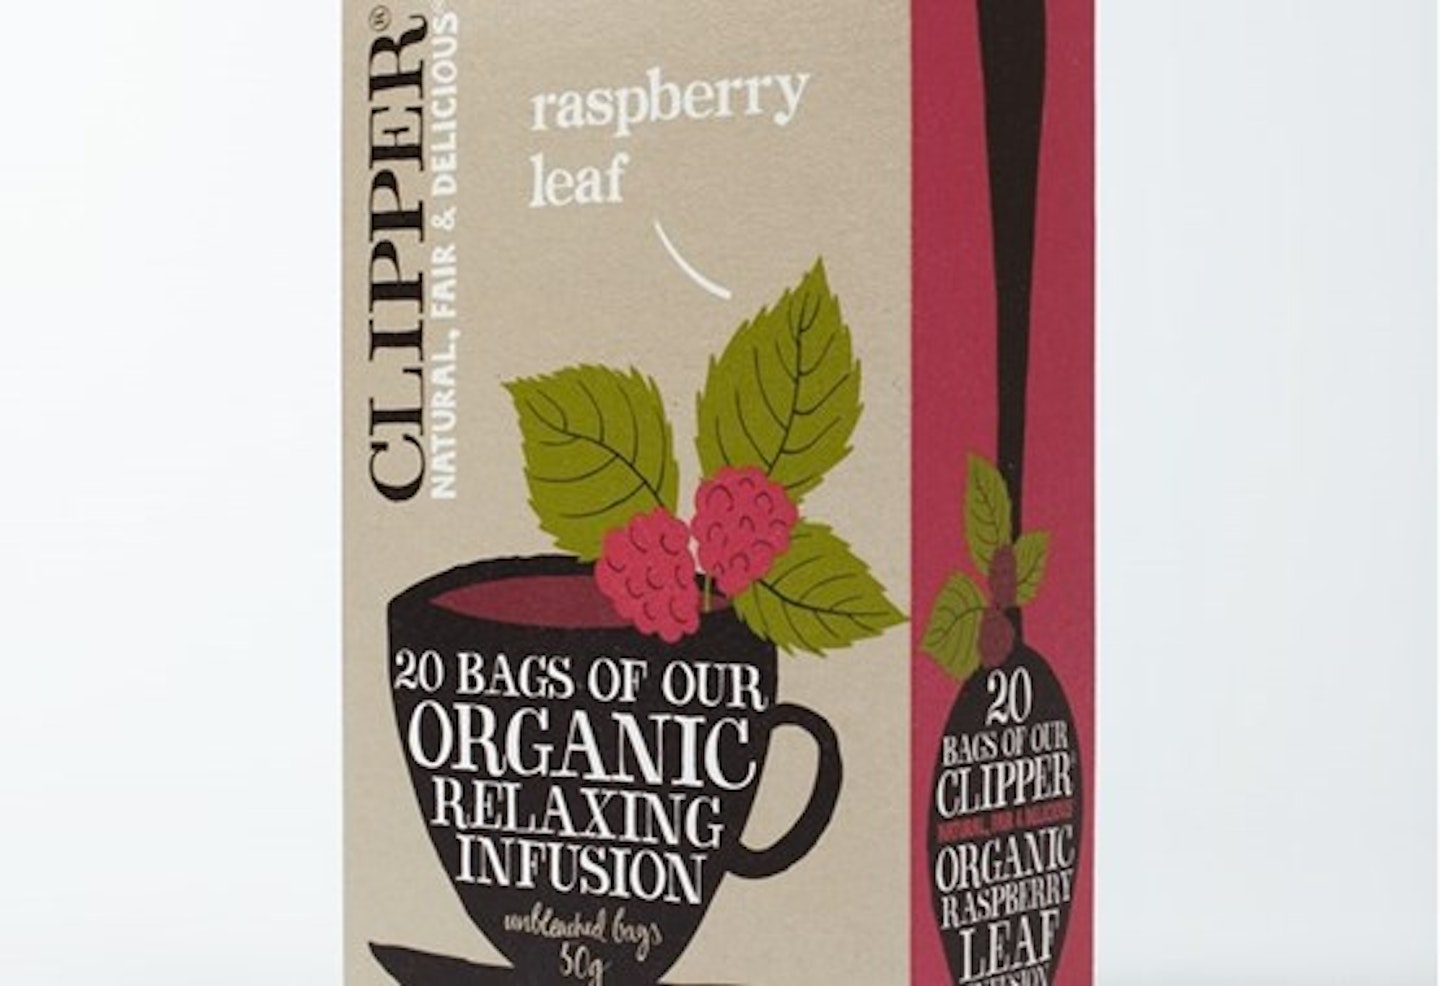 Clipper Raspberry Leaf Tea